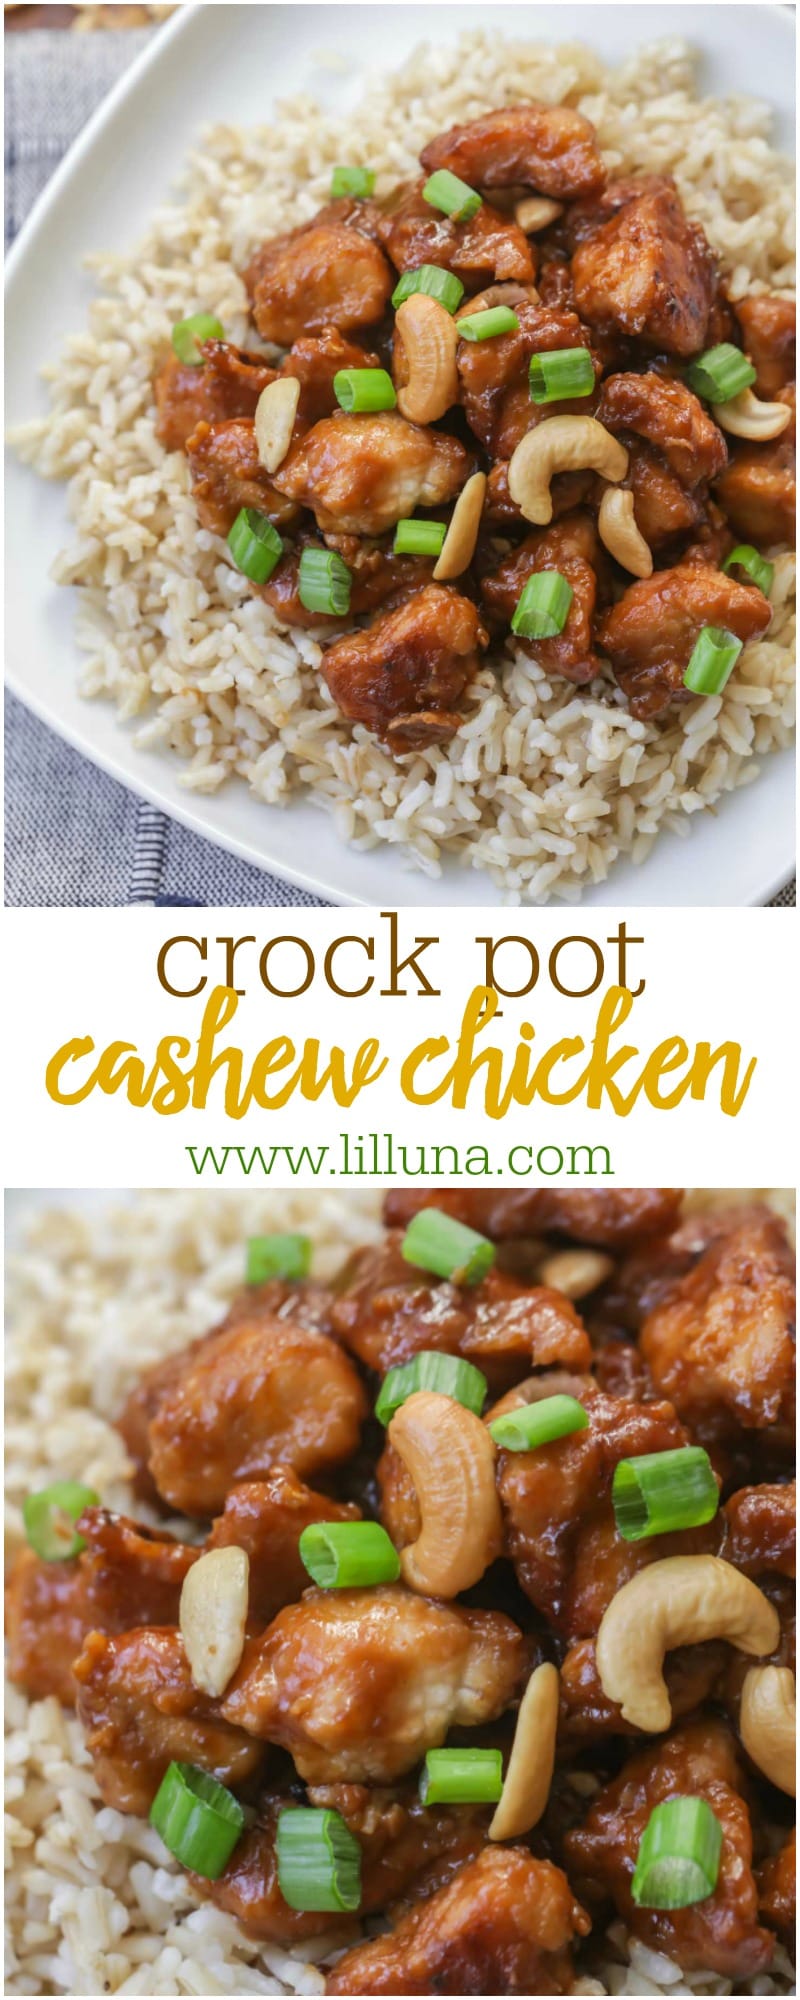 crock pot cashew chicken